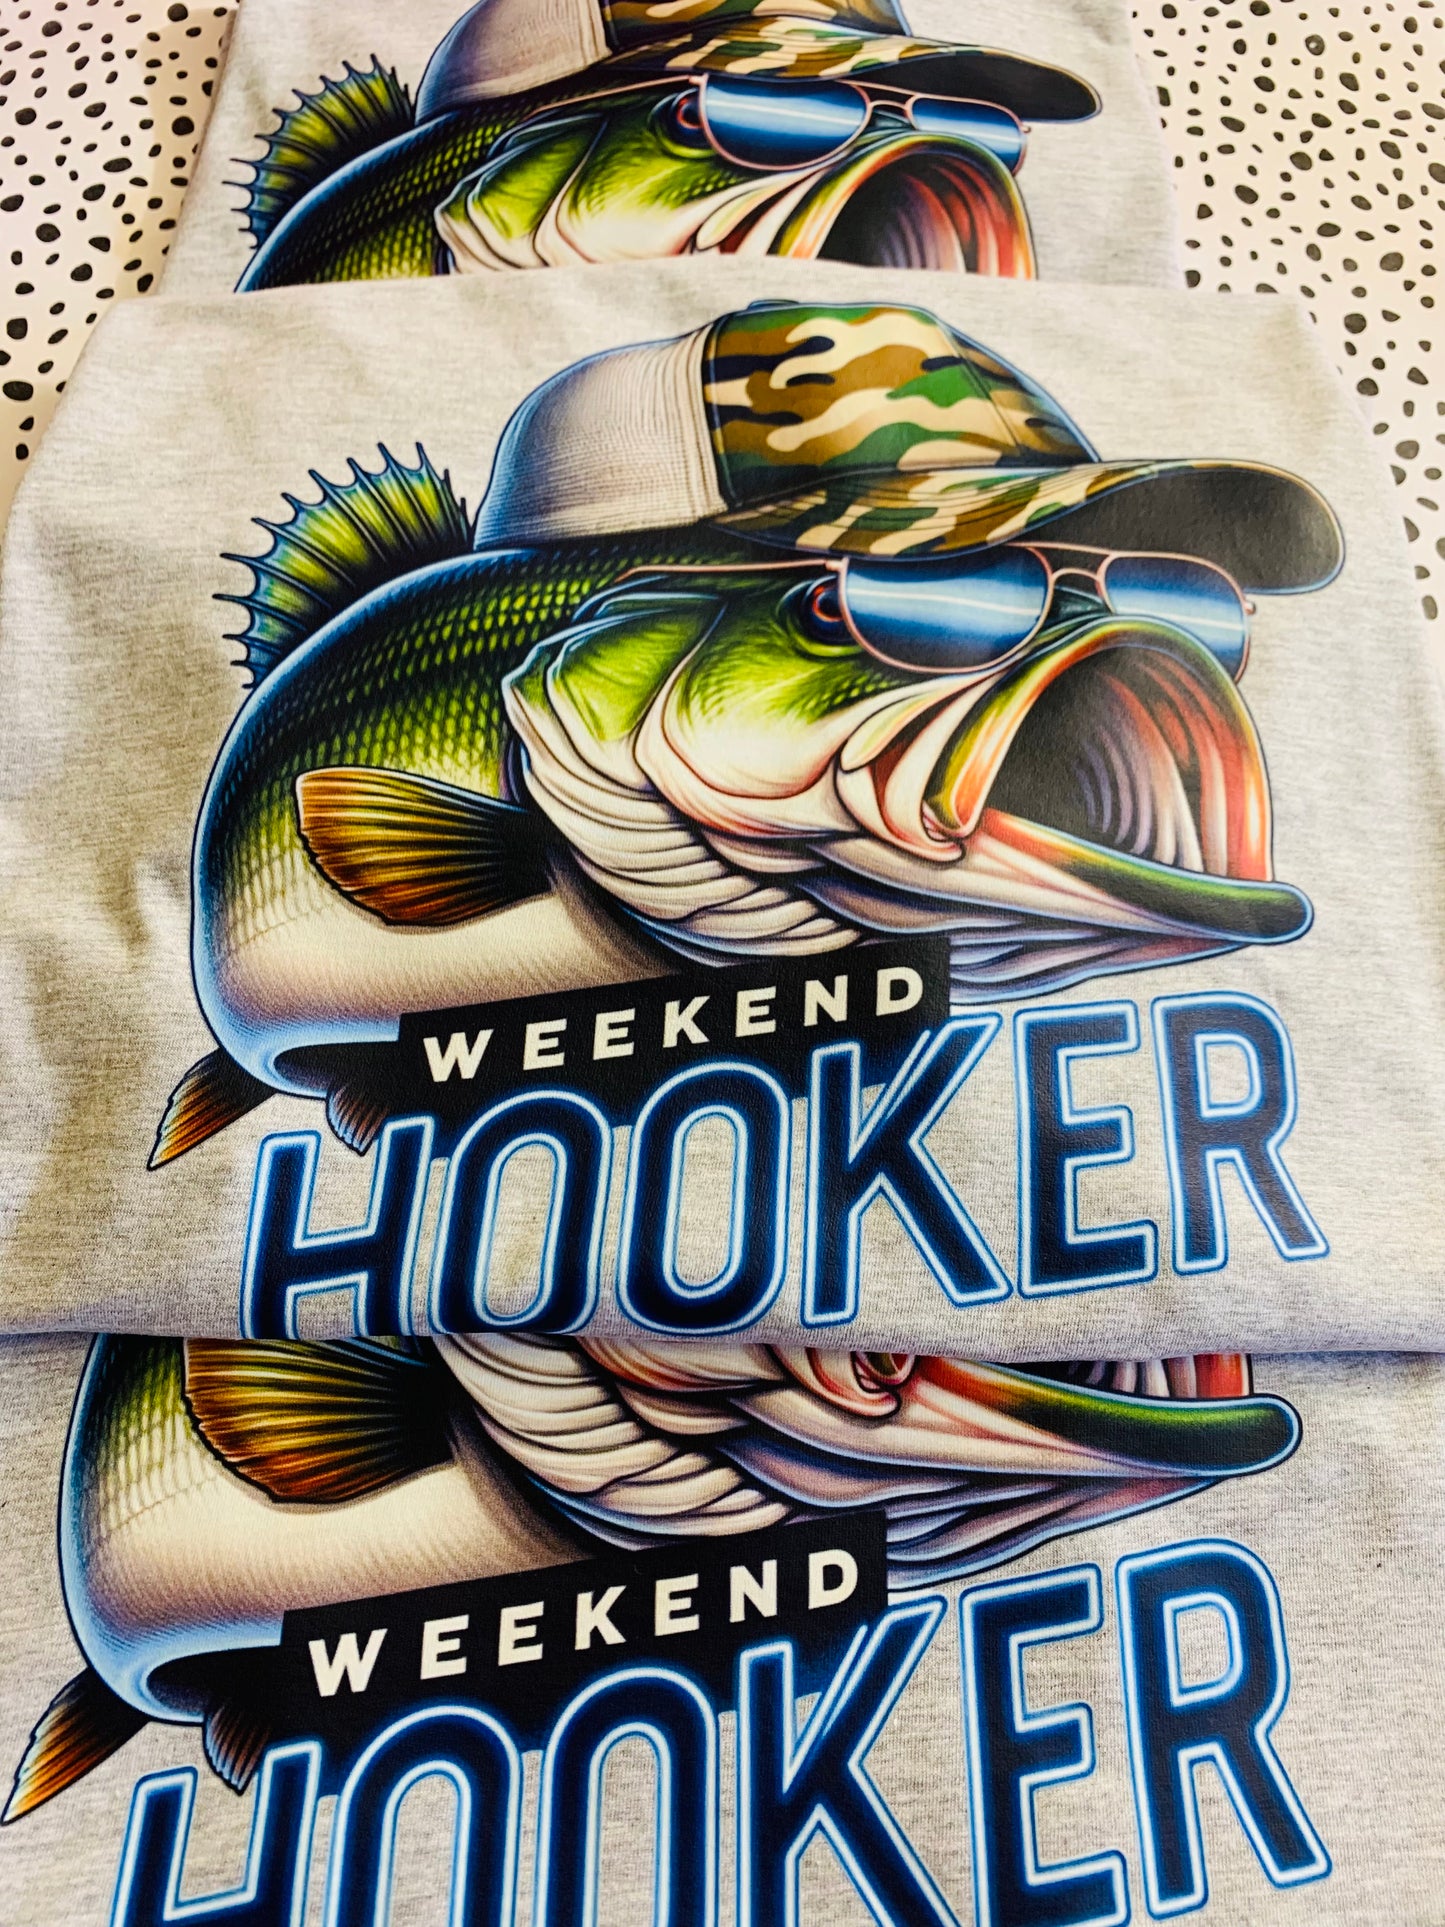 Weekend Hooker